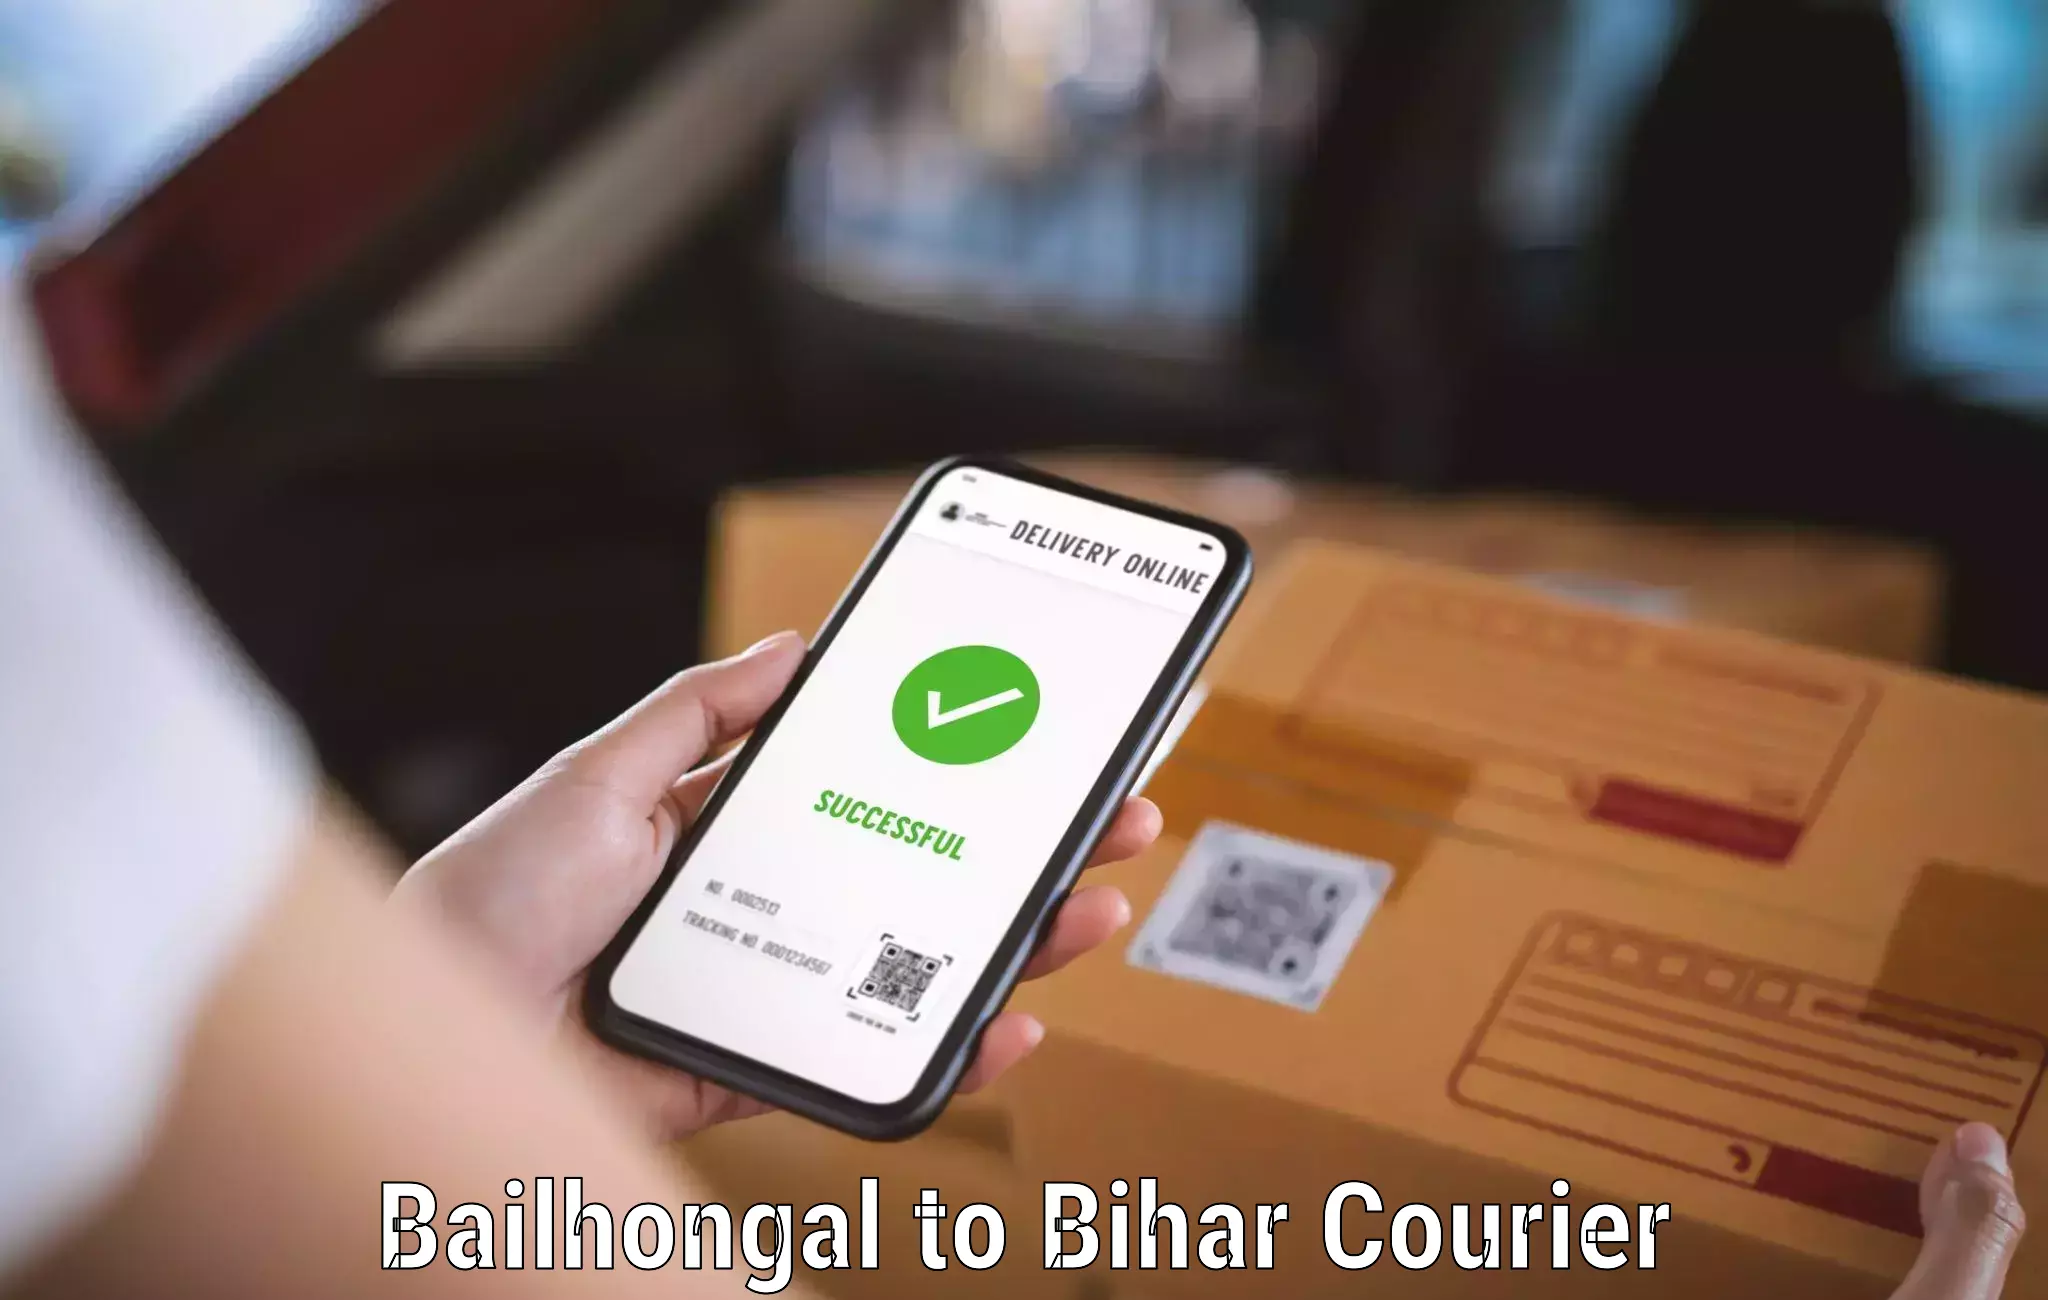 Bulk shipment Bailhongal to IIIT Bhagalpur